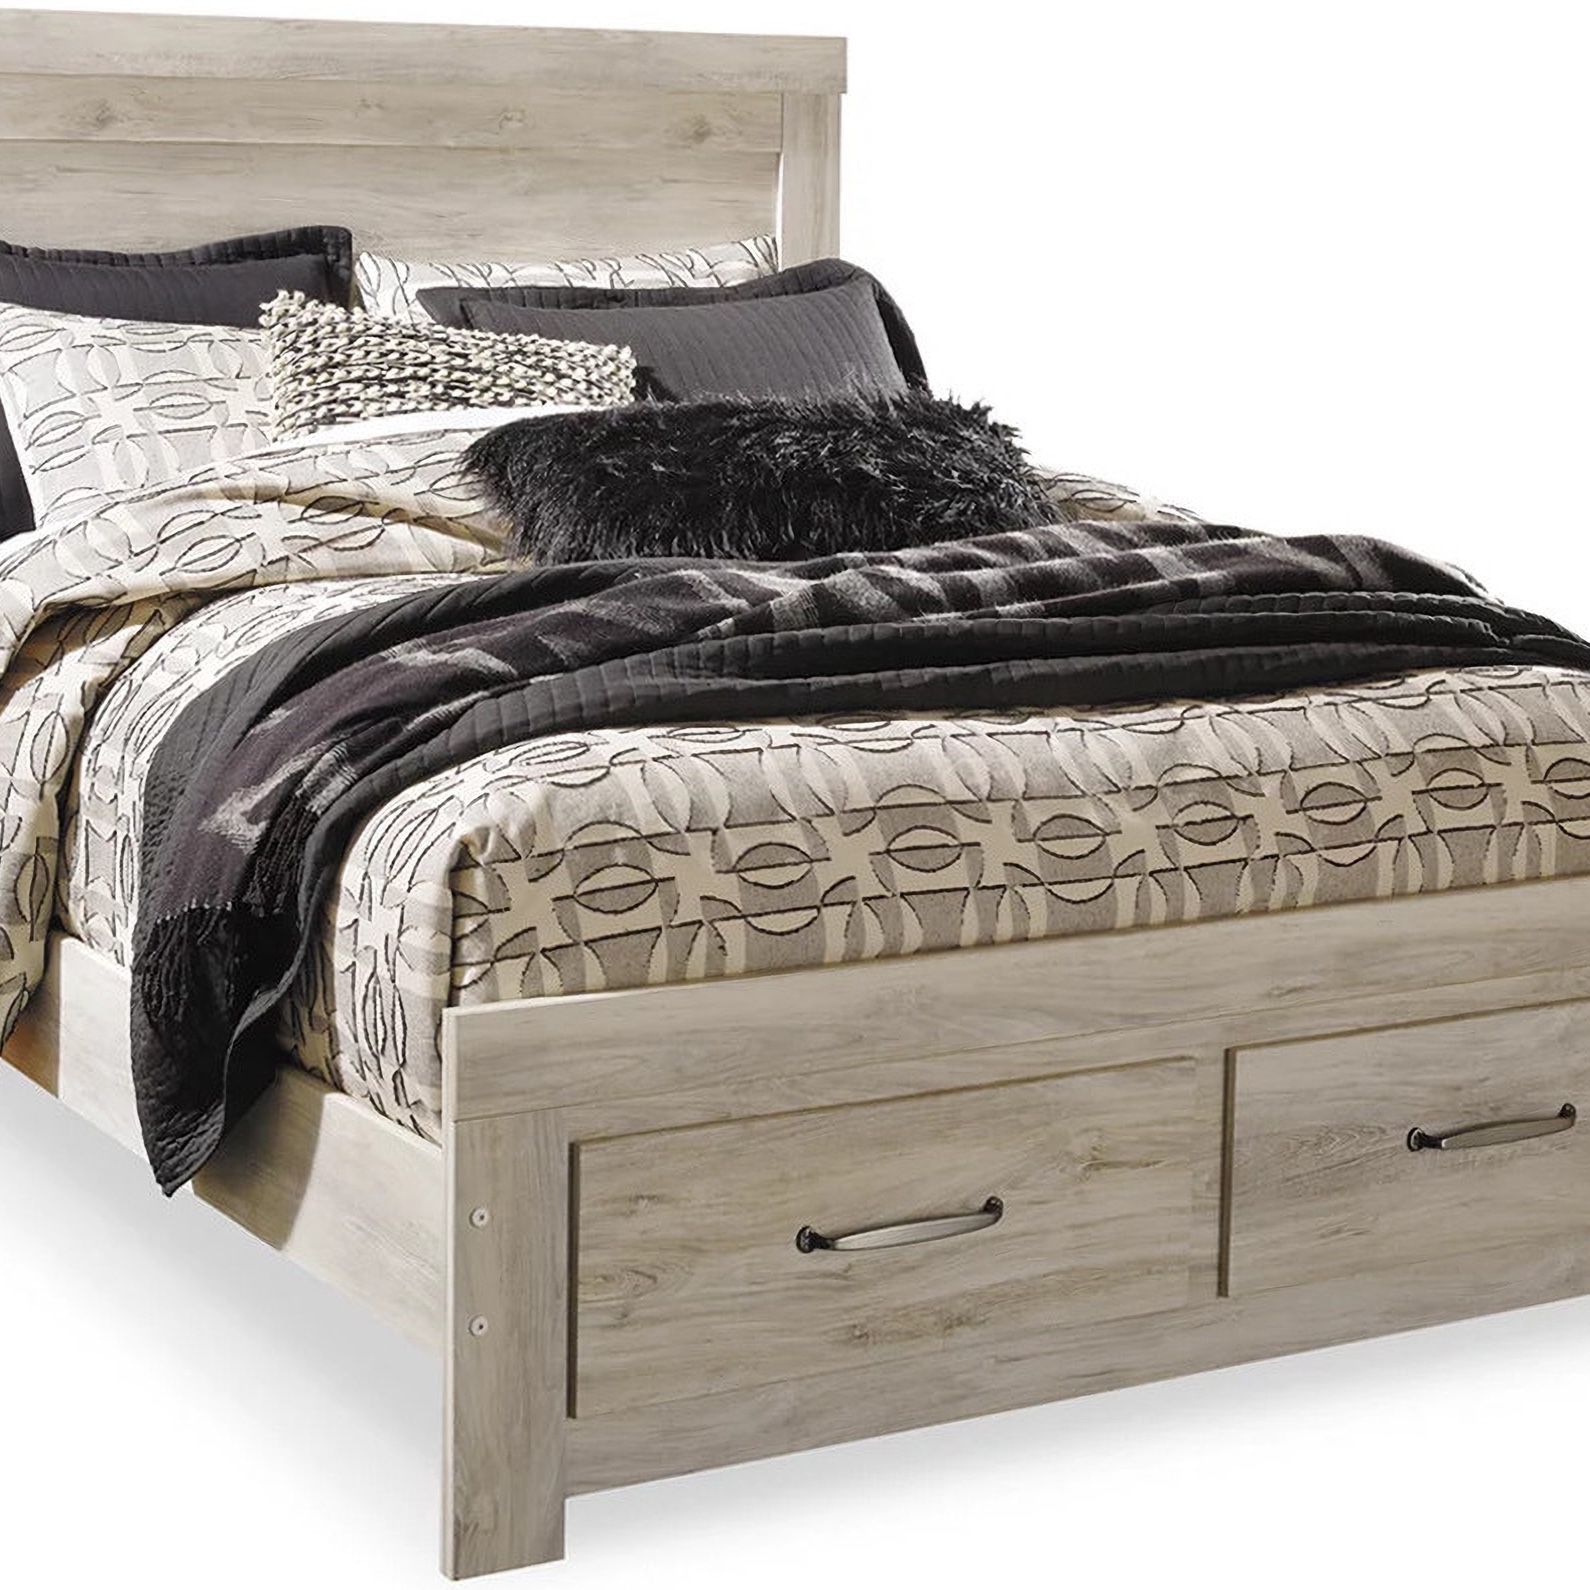 Ashley Furniture Wash Oak  New Platform Bed Frame Storage Drawers! King $528 Queen $428